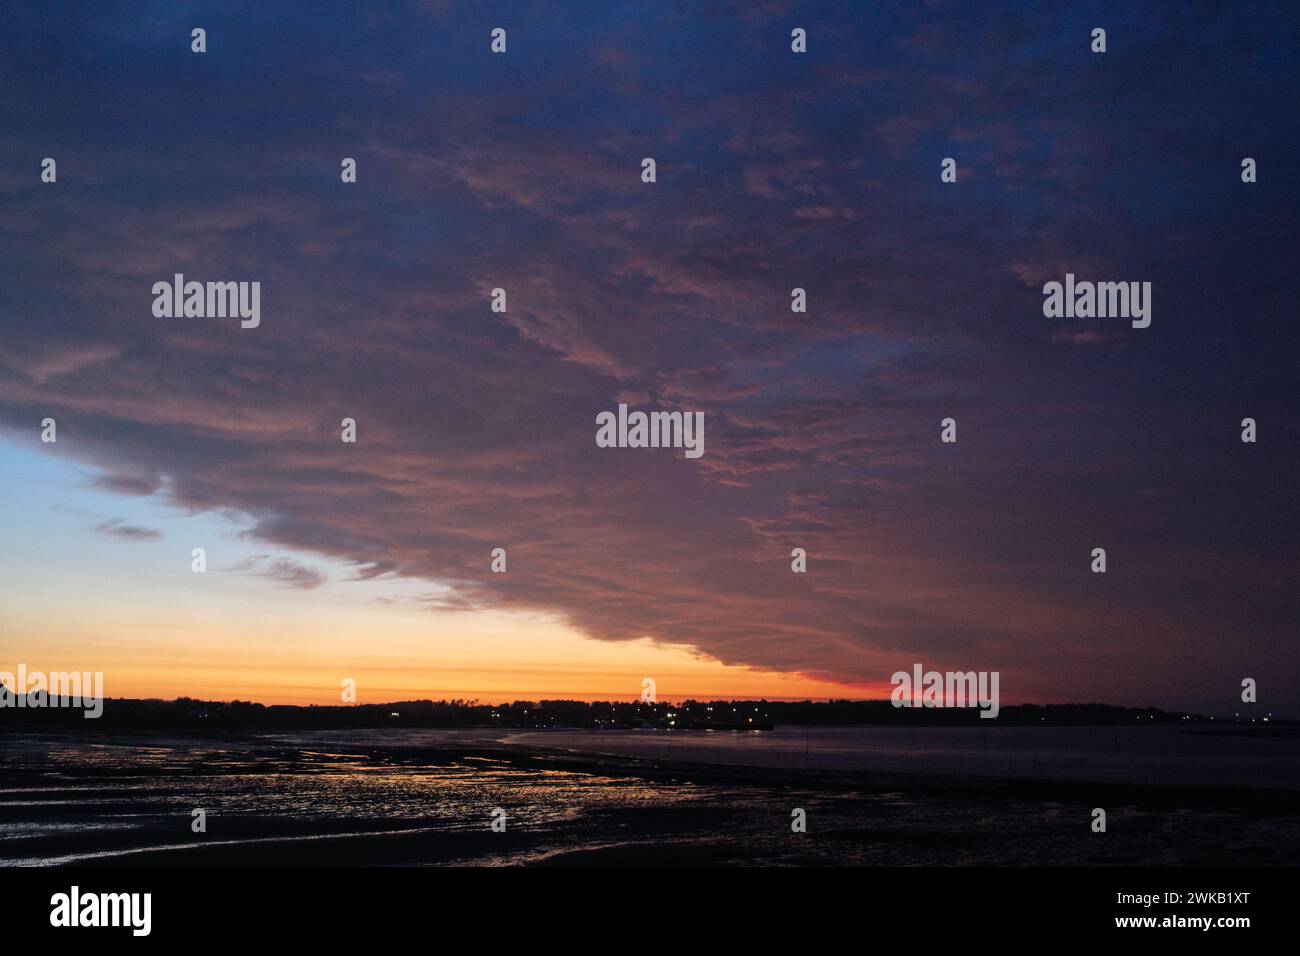 Spektakulärer Sonnenuntergang auf der Insel Amrum Stock Photo